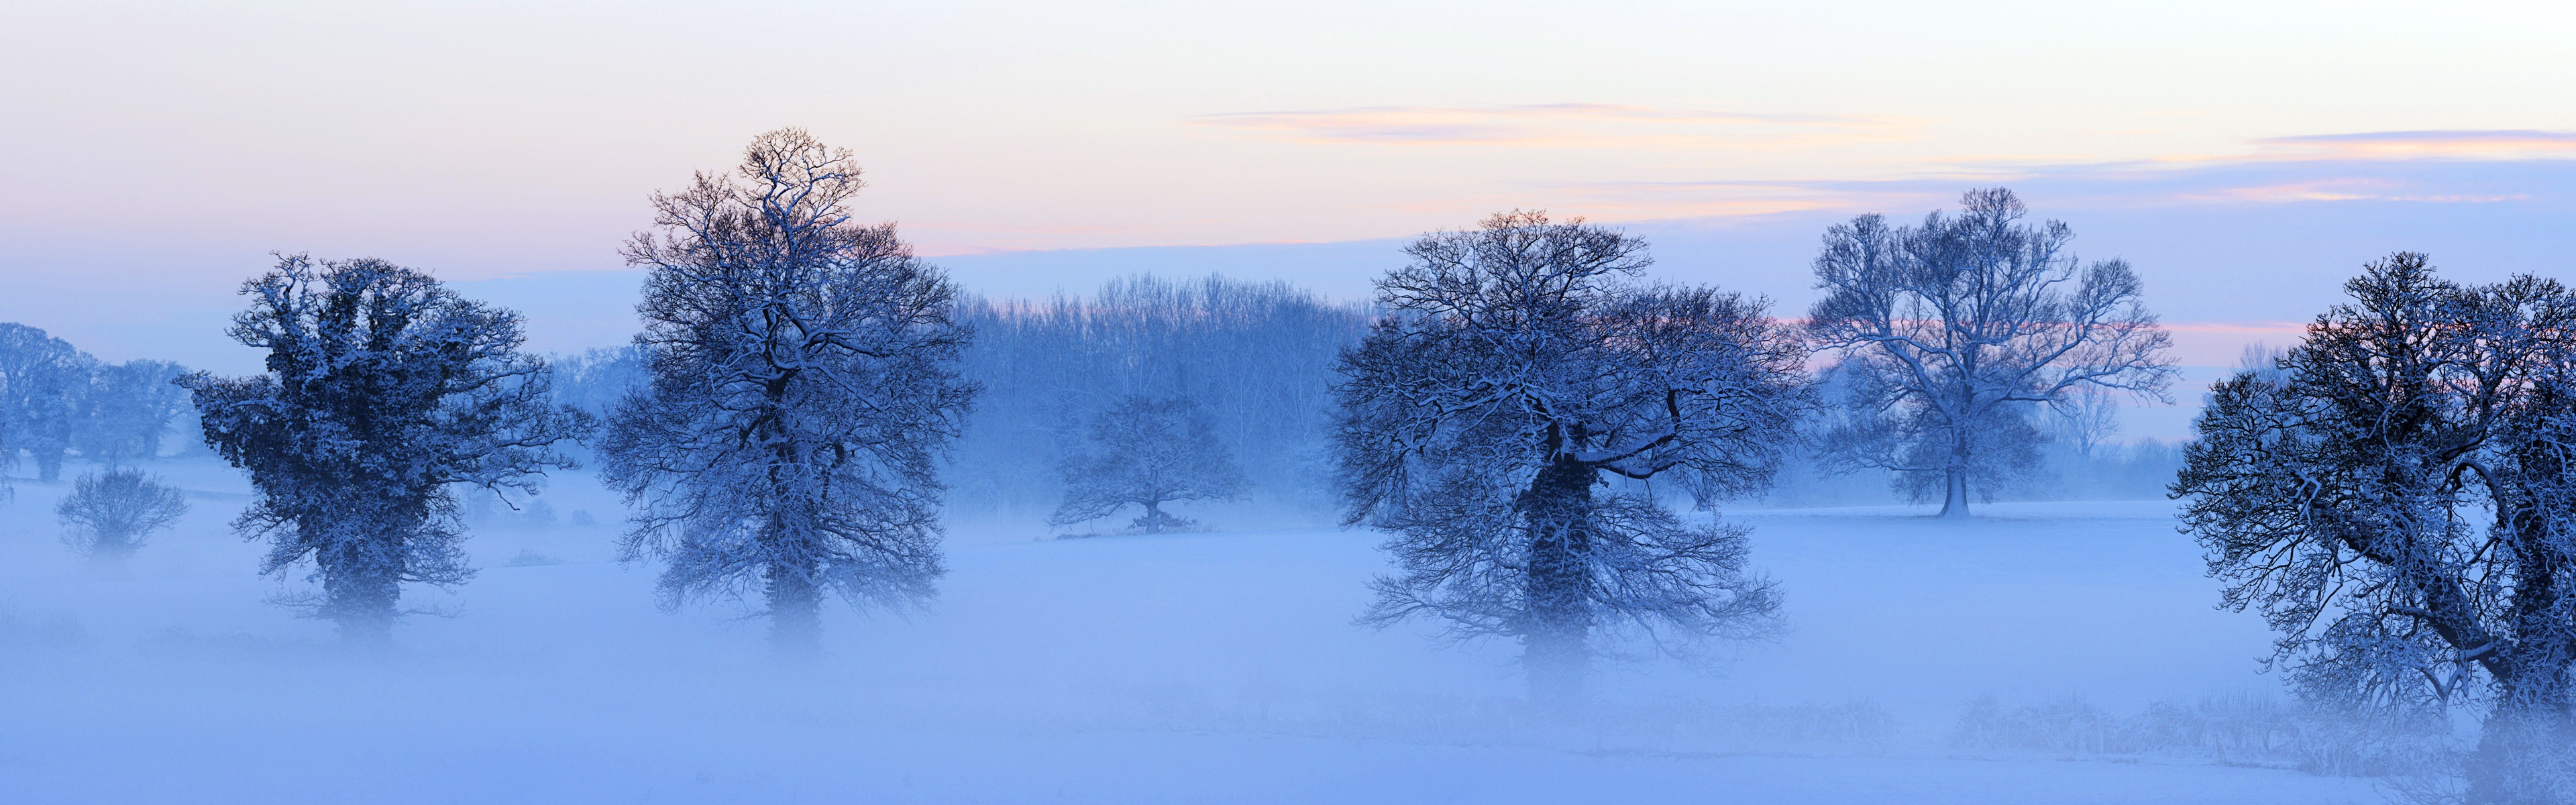 Красивая холодная зима снег, Windows 8 панорамные картинки на рабочий стол #6 - 3840x1200